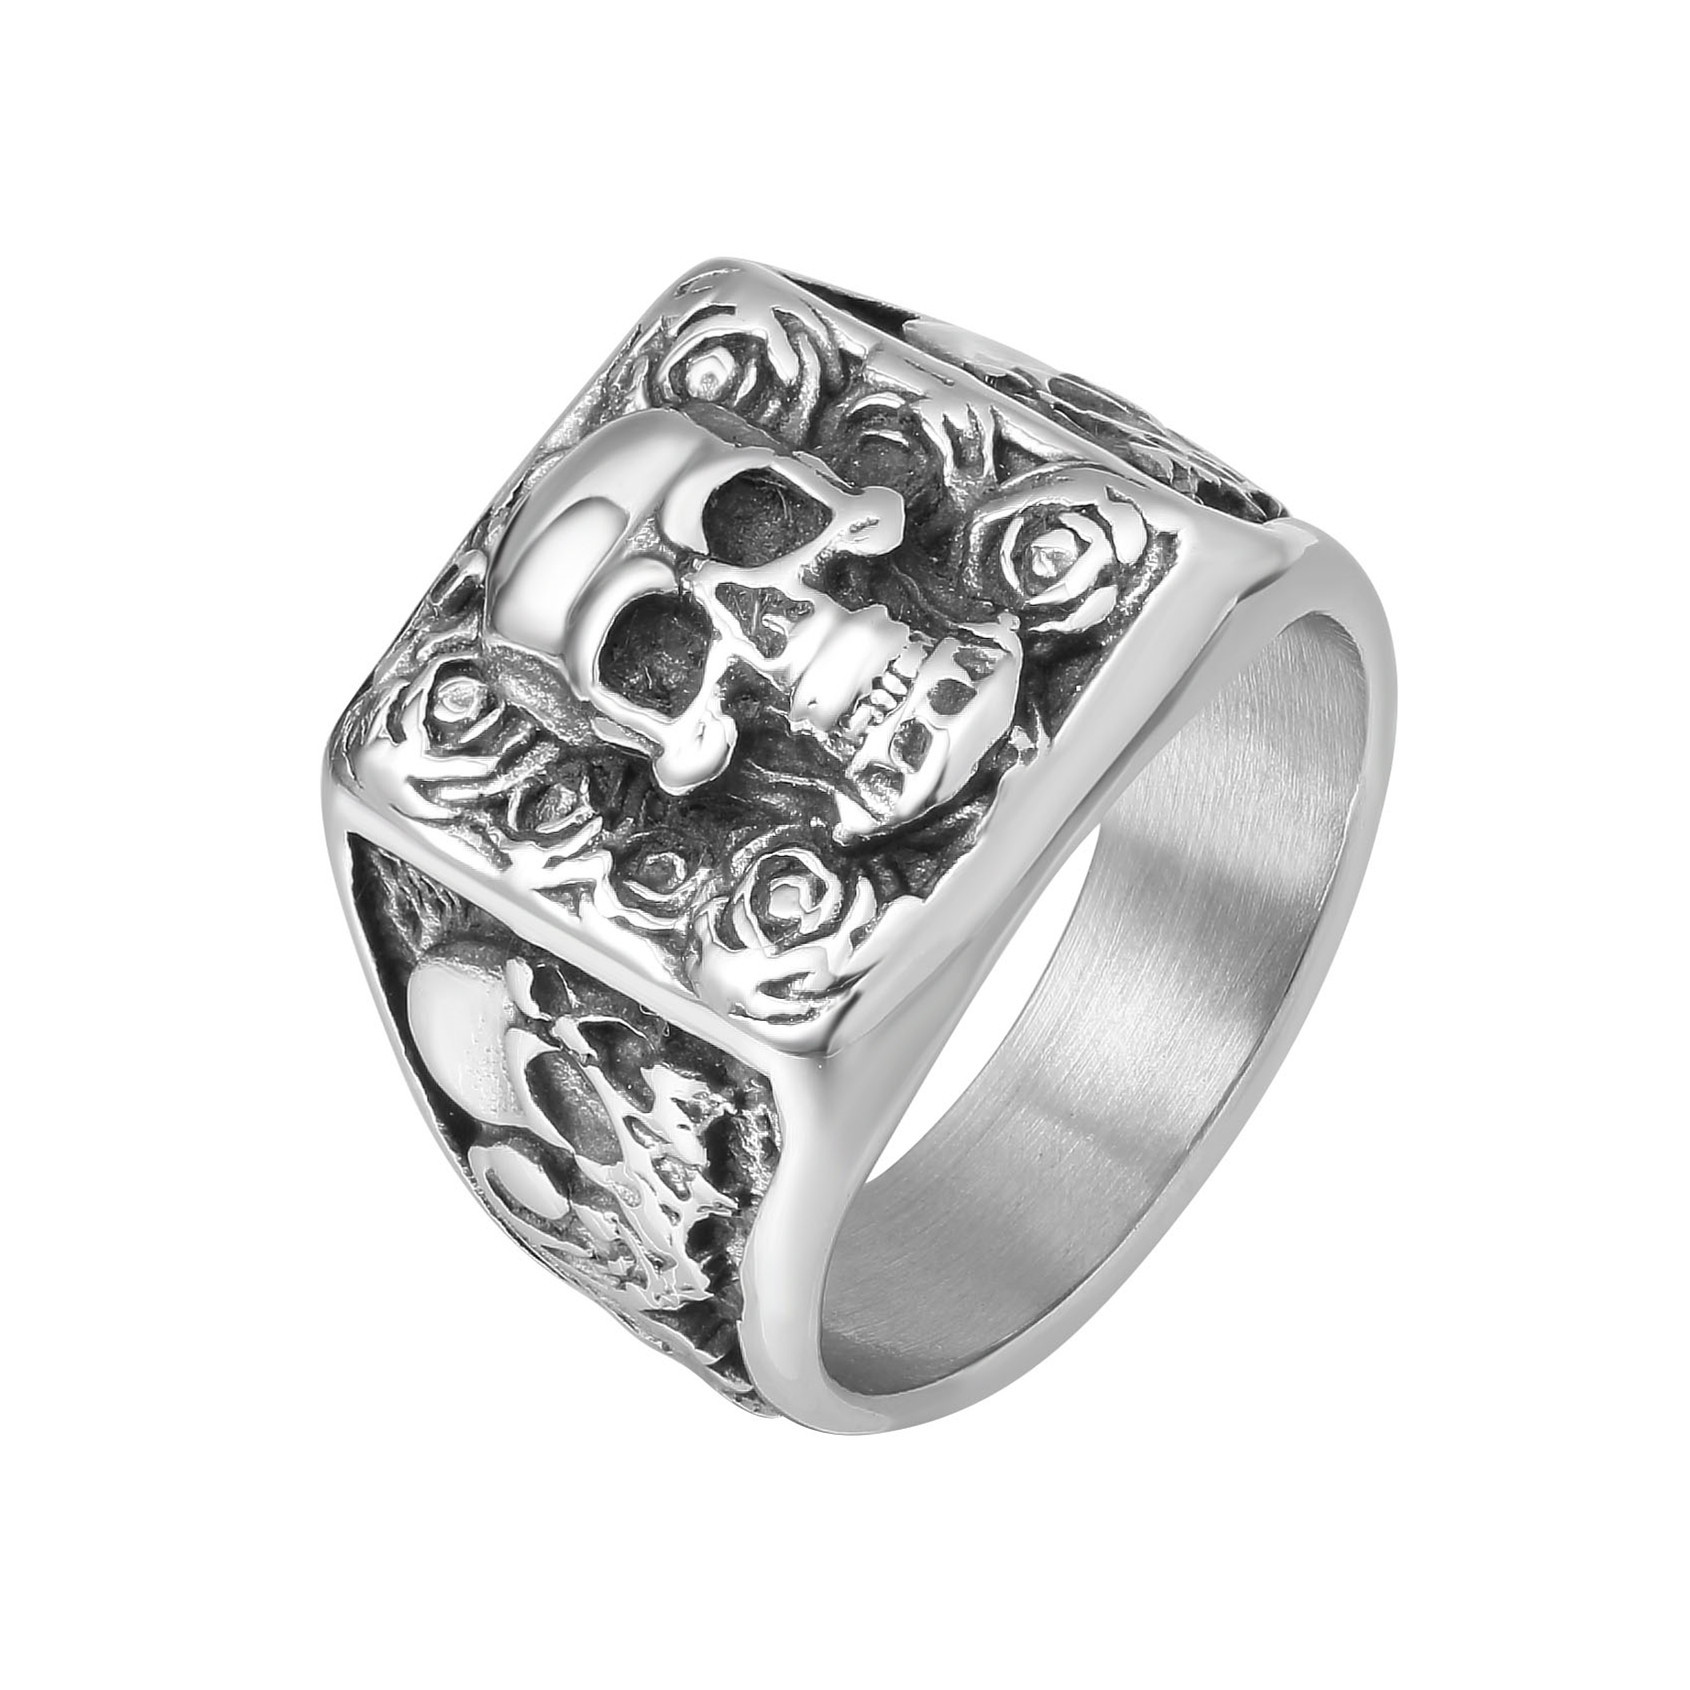 R1470 欧美个性复古朋克饰品 骷髅头男士钛钢戒指